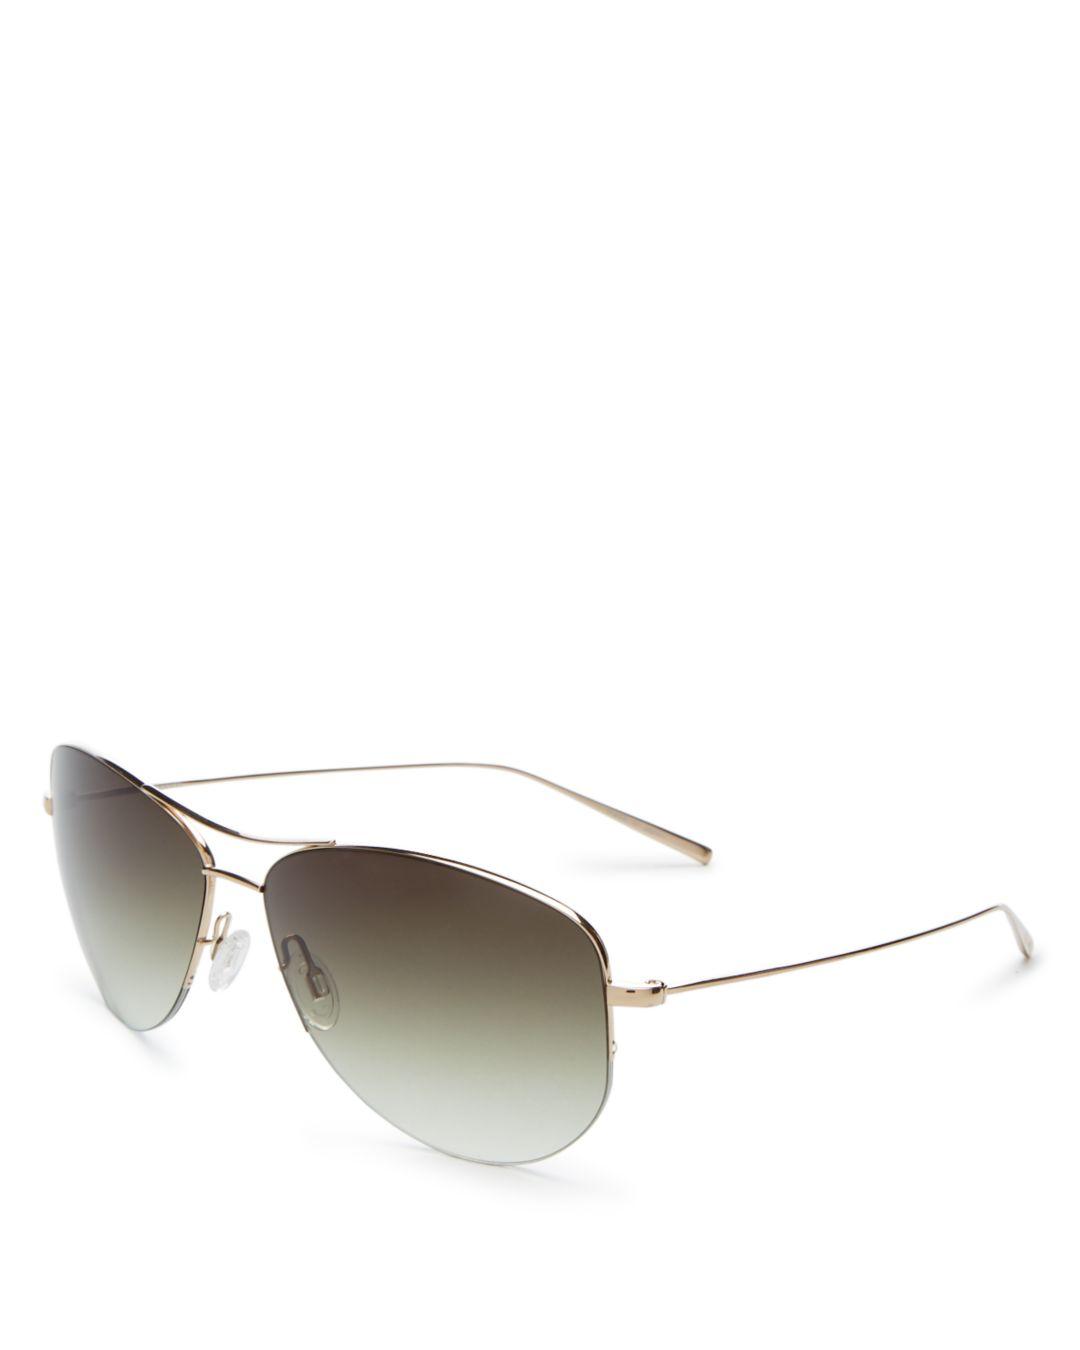 oliver peoples strummer aviator sunglasses Hot Sale - OFF 69%